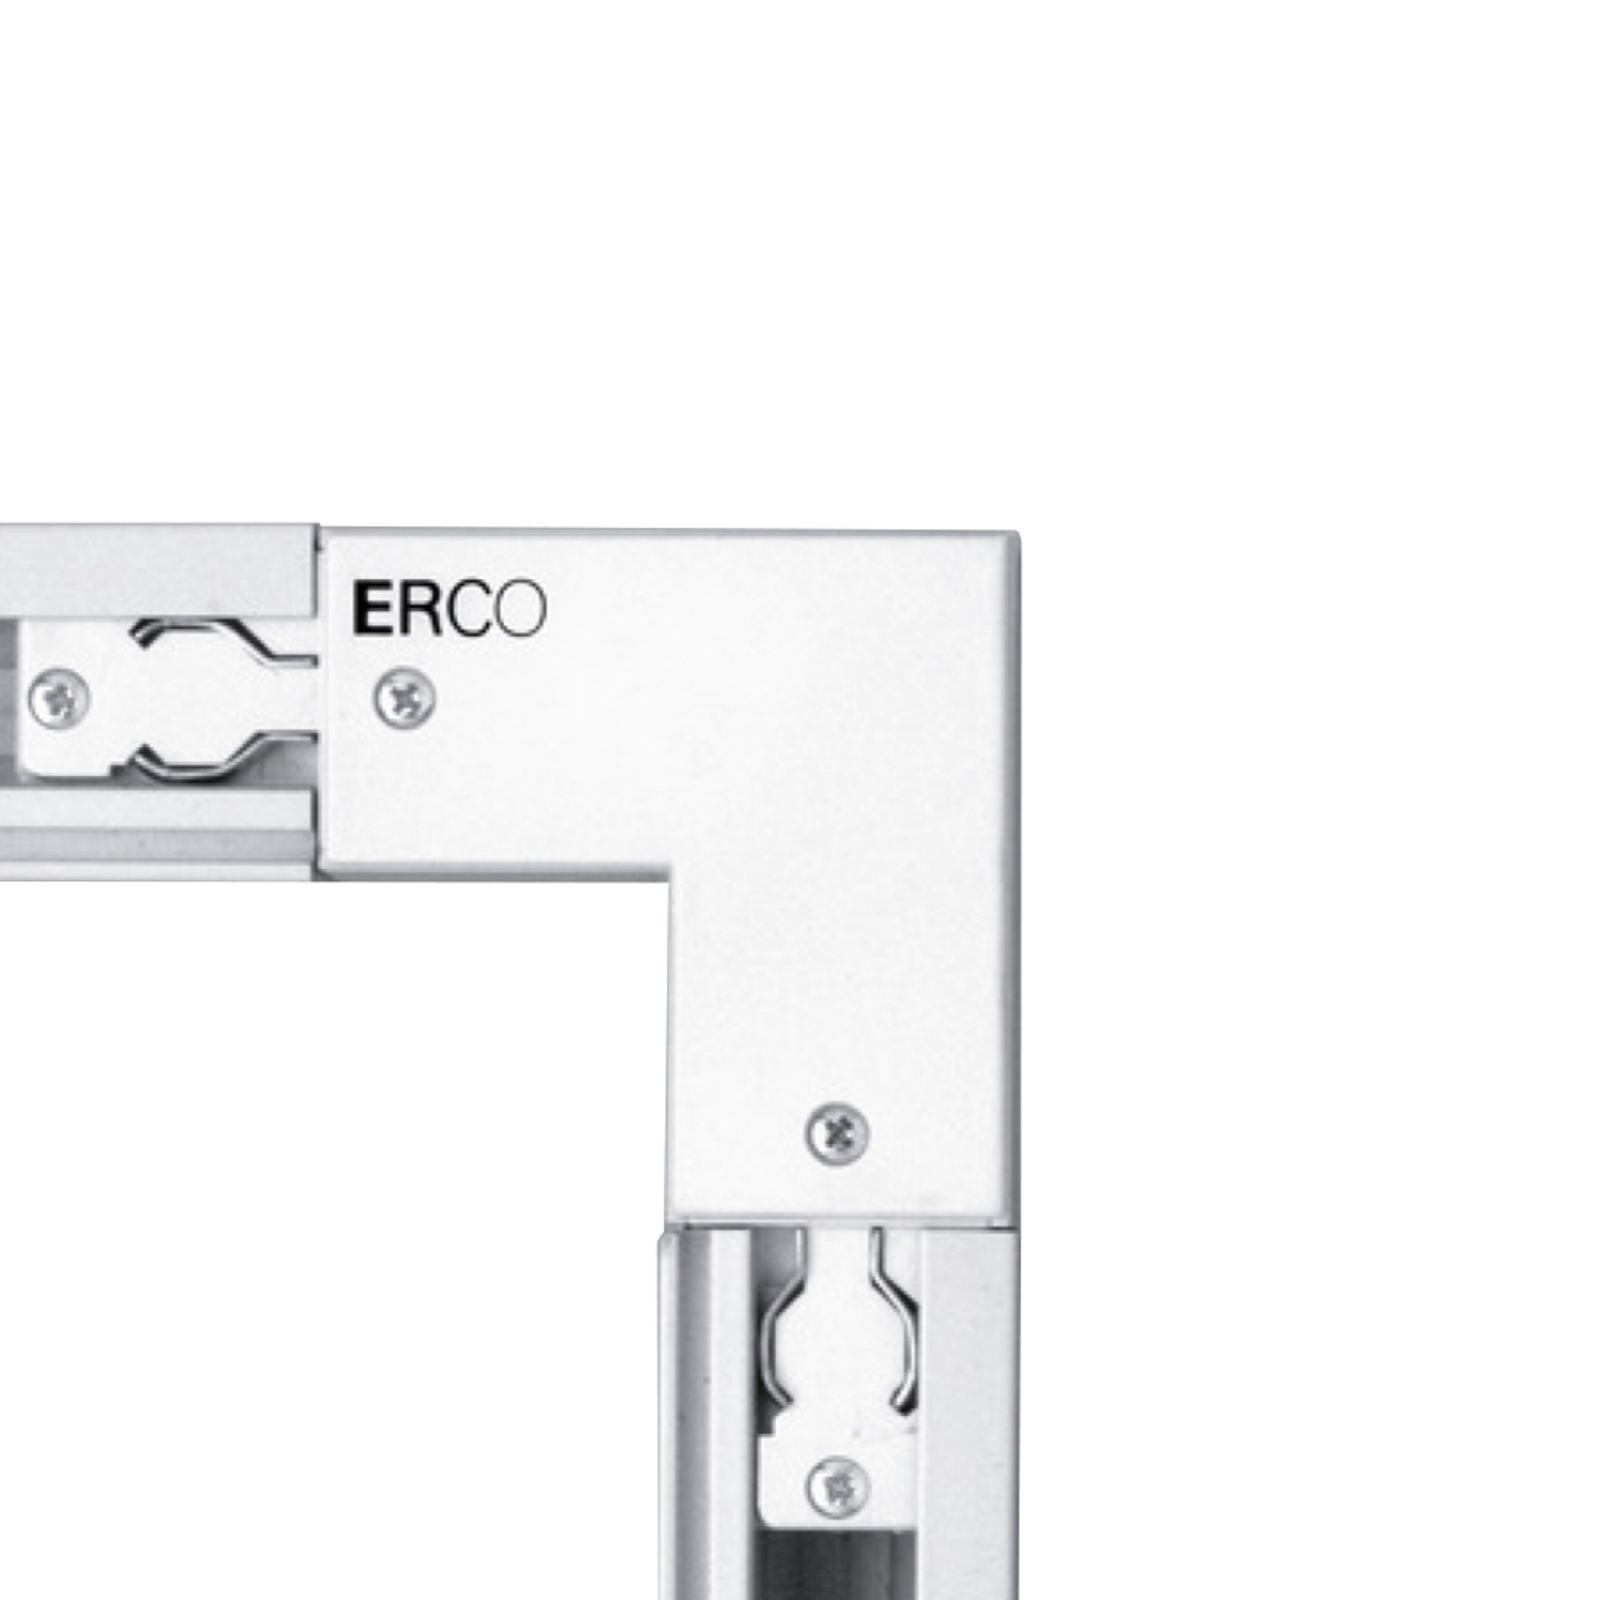 ERCO zaštita 3-faznog kutnog utikača. iznutra, bijela